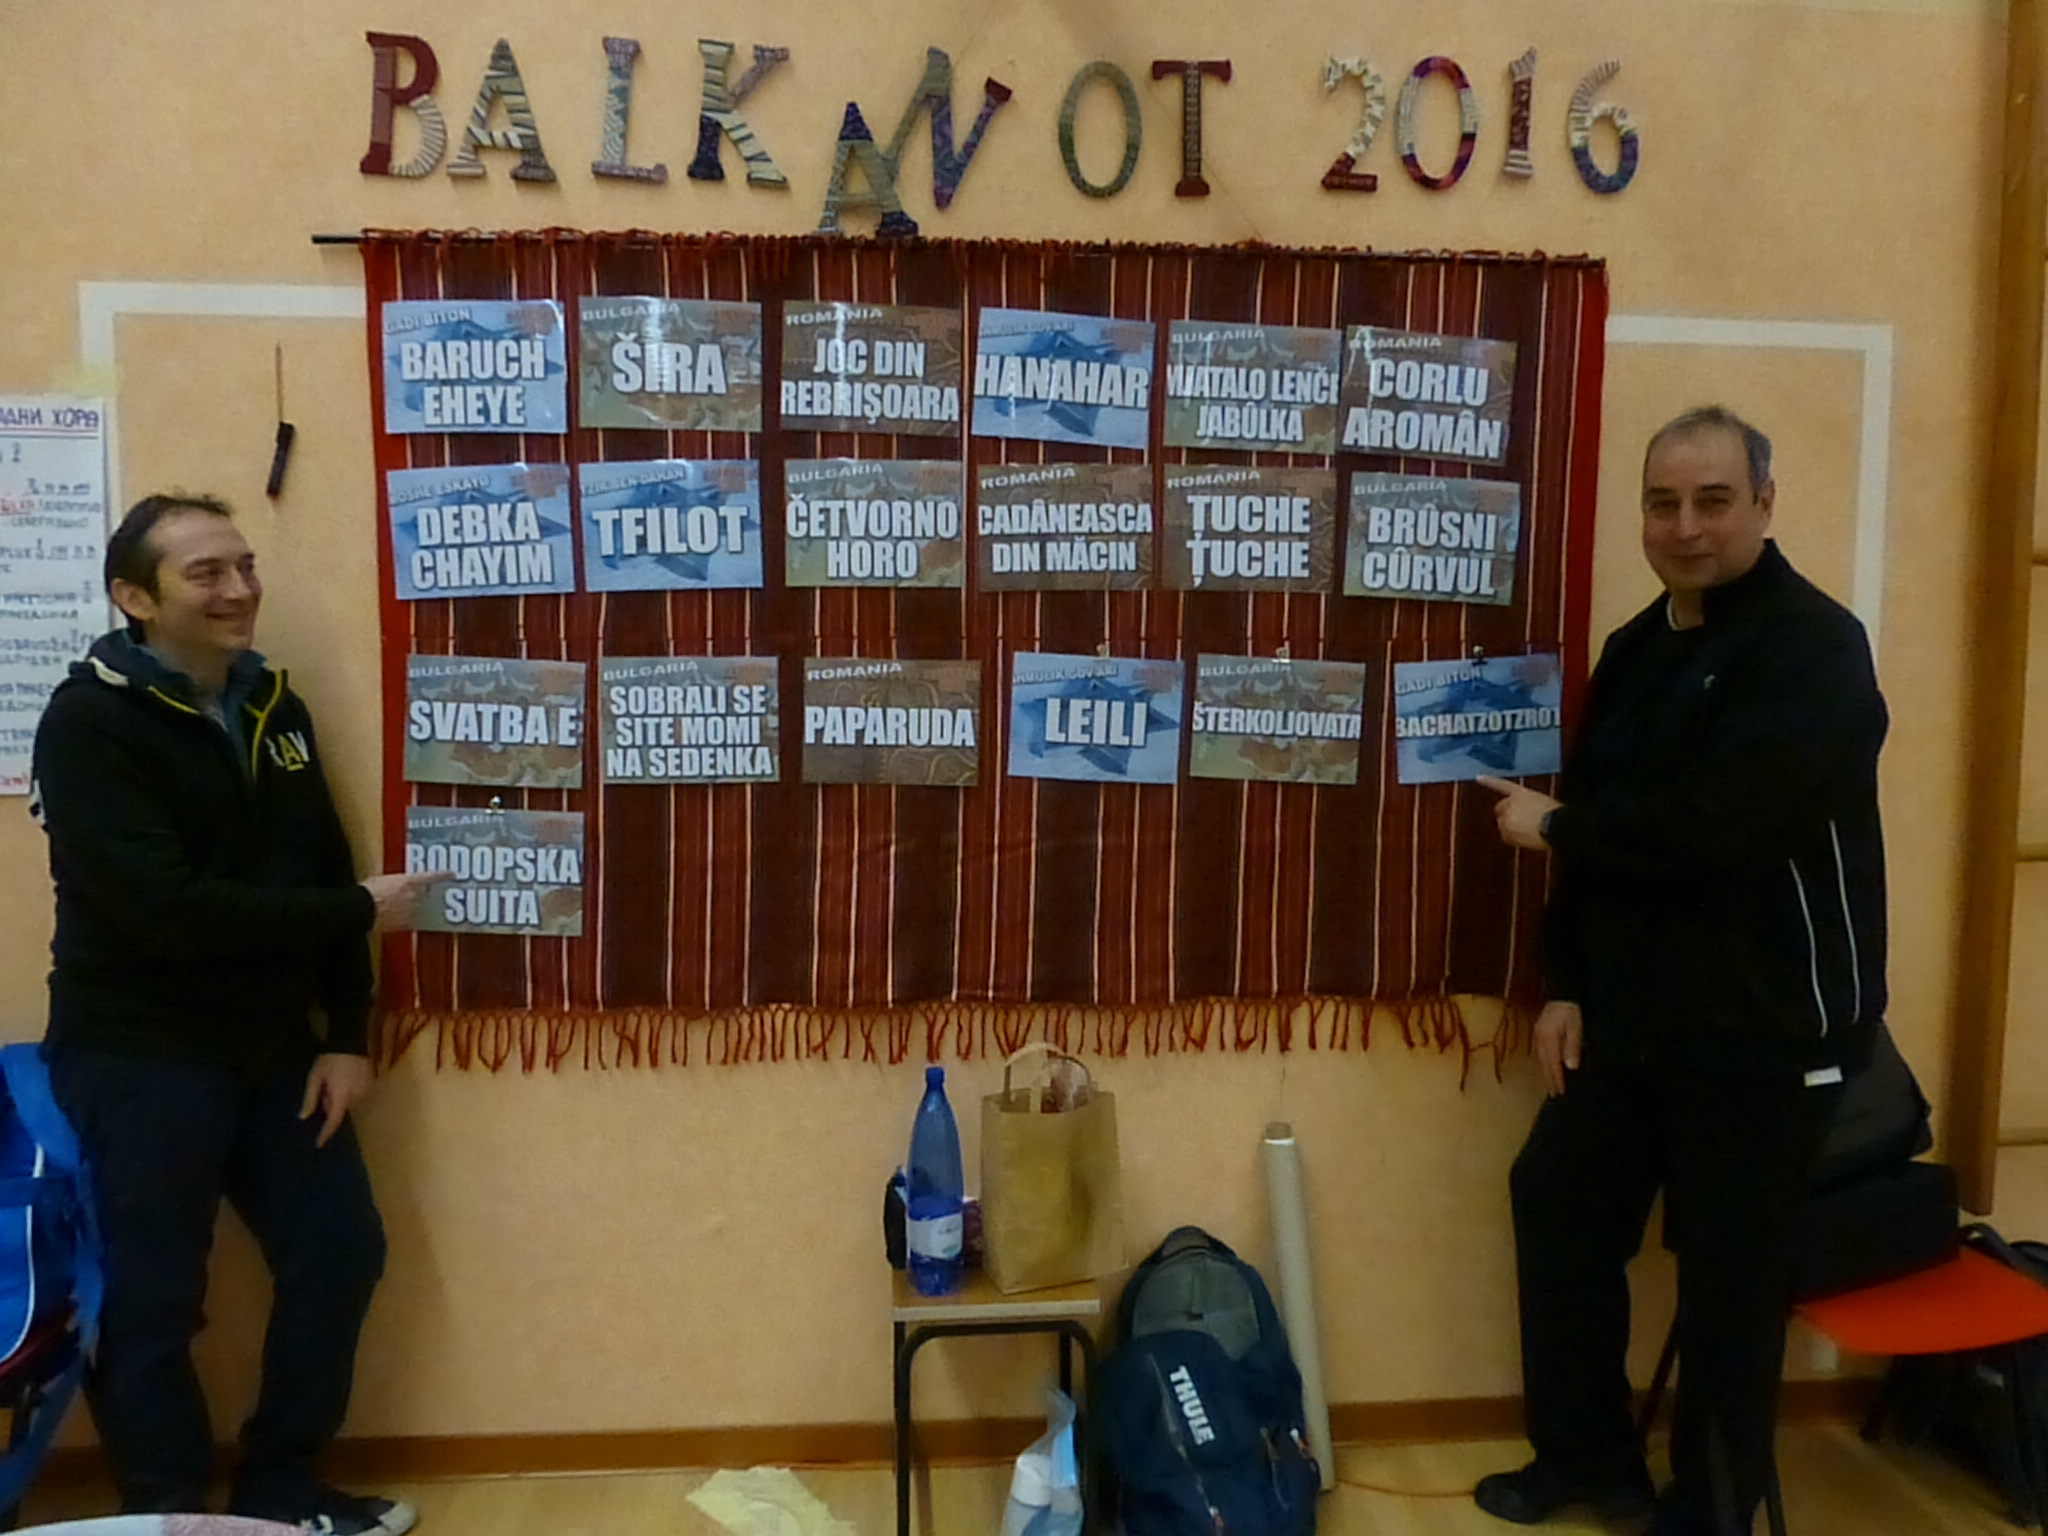 Balkanot_2016_AleB-065.JPG